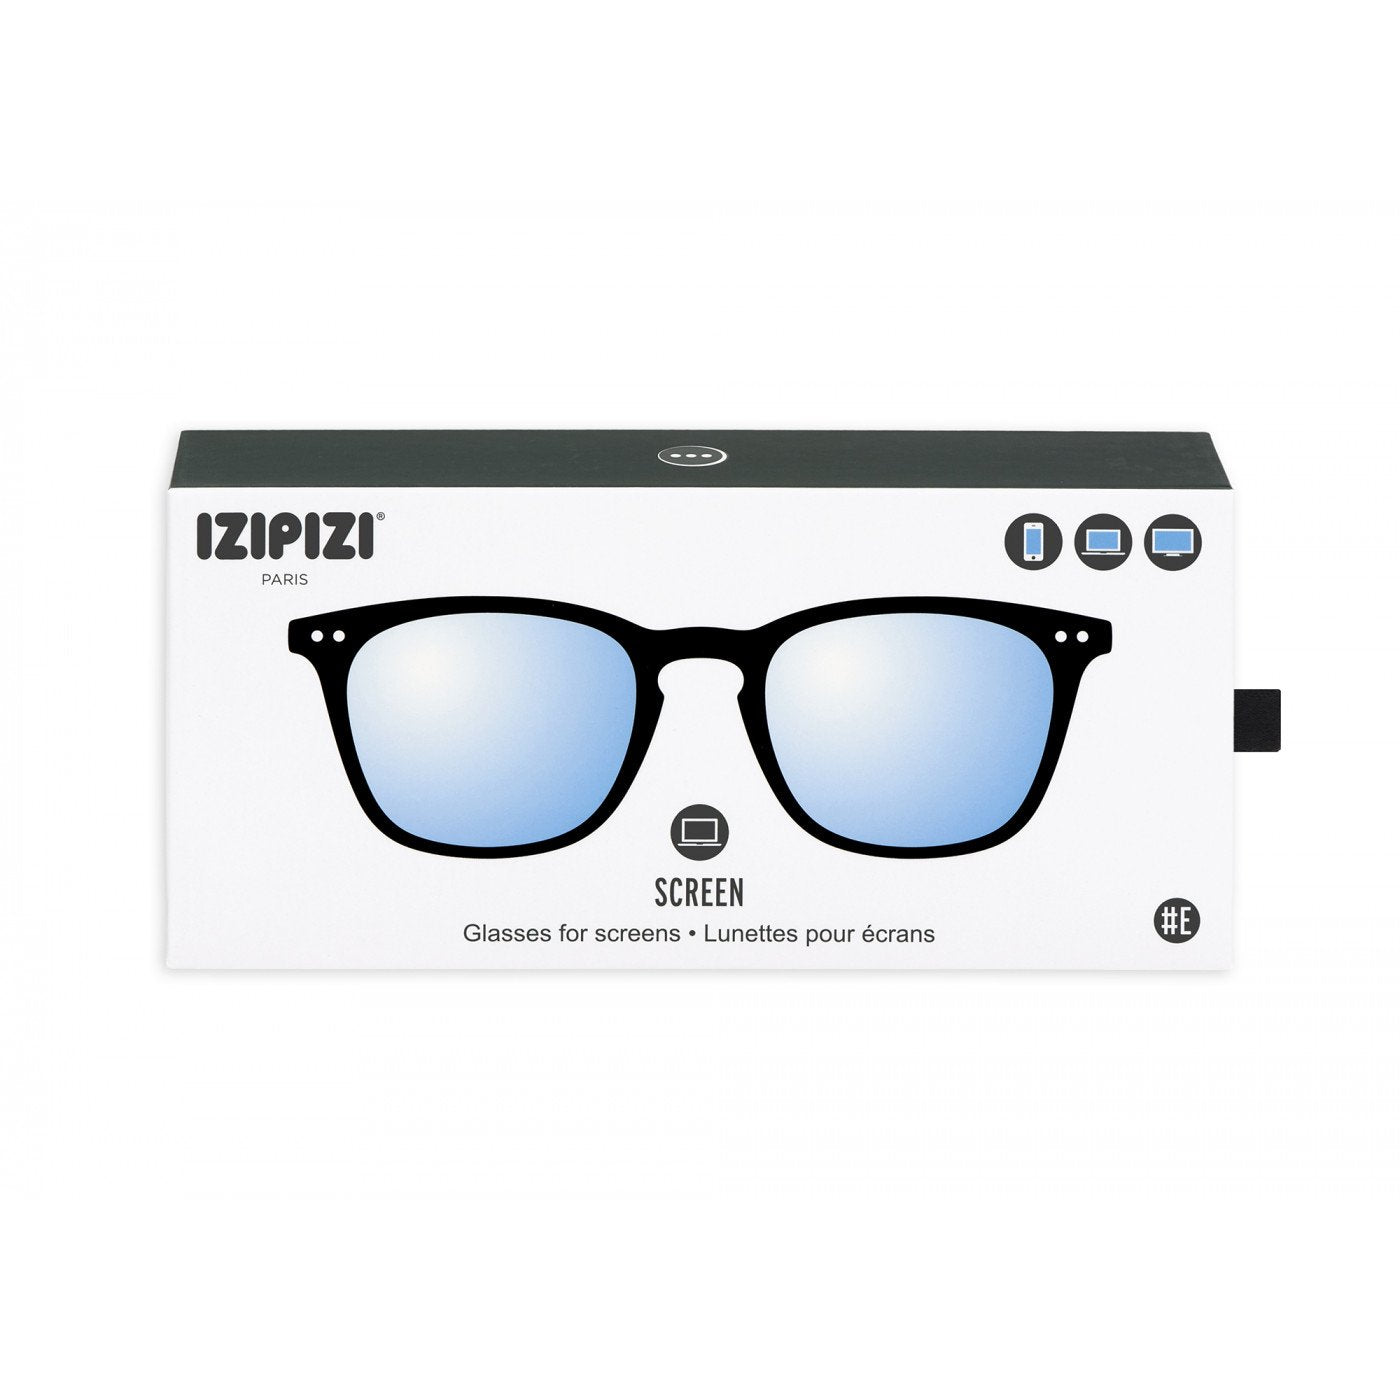 IZIPIZI #E Black Soft +0,00 Screen Glasses